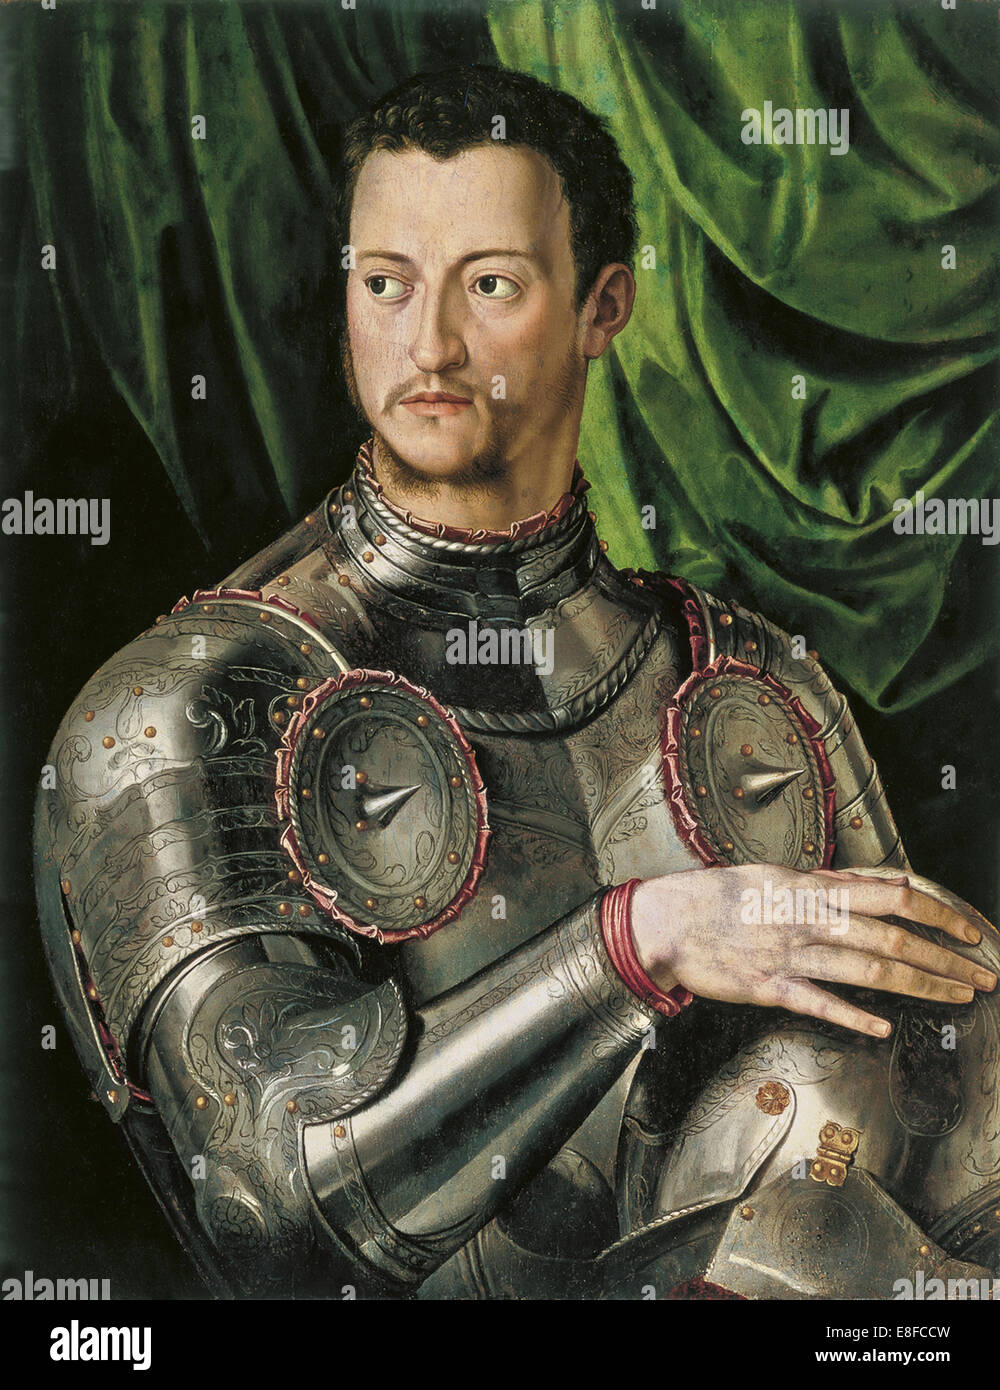 Porträt von Großherzog der Toskana Cosimo ich de' Medici (1519-1574) in Rüstung. Künstler: Bronzino, Agnolo (1503-1572) Stockfoto